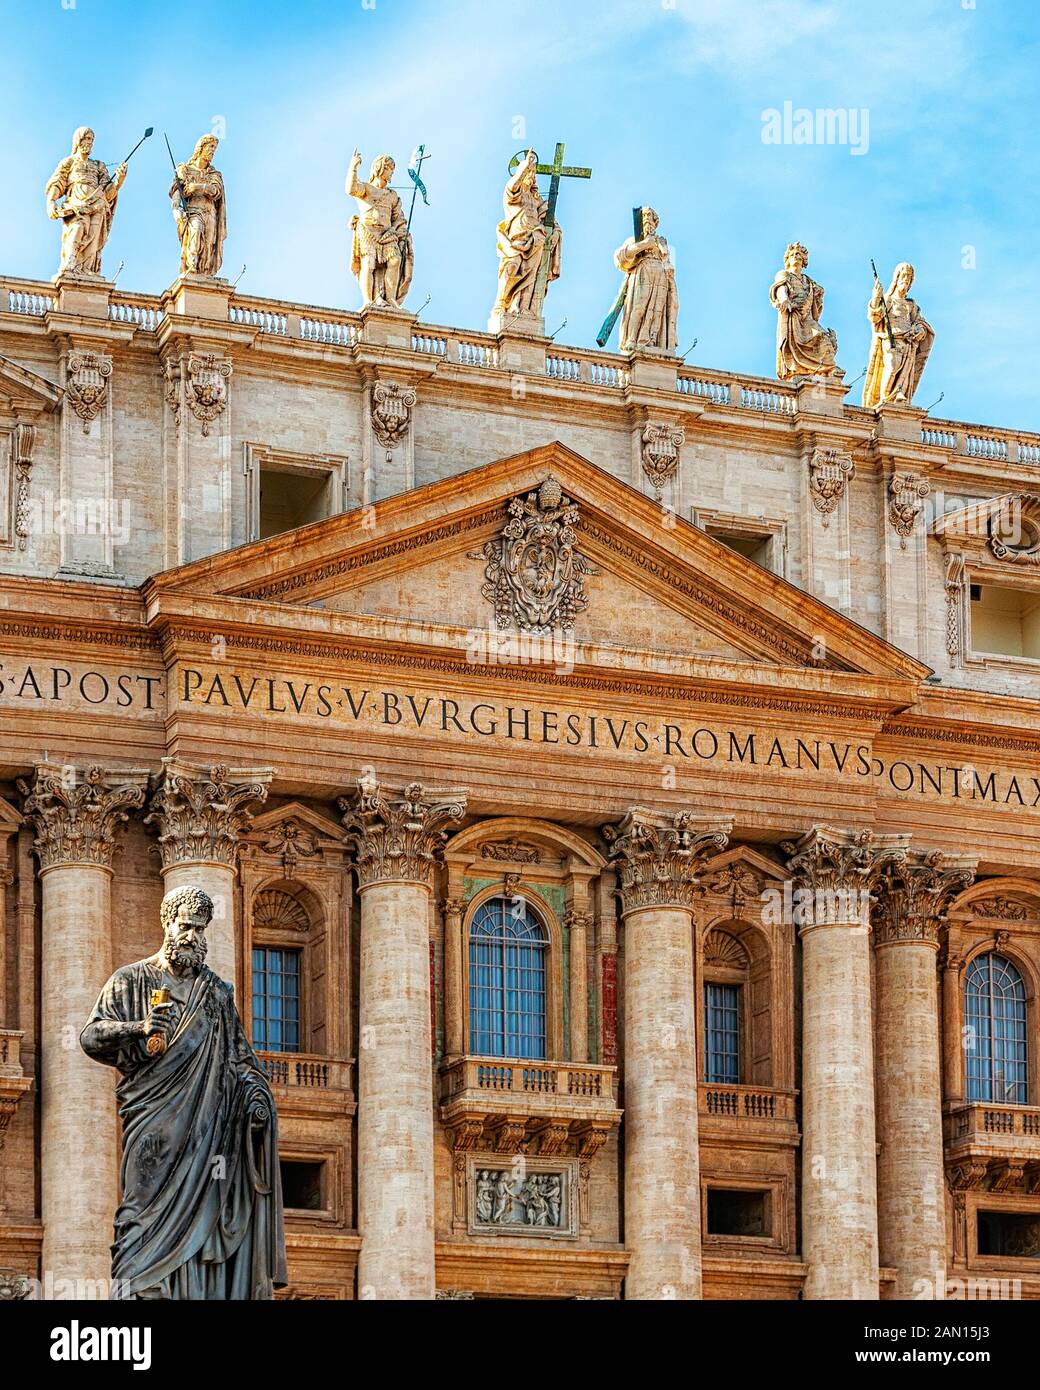 VATICAN - janvier 08, 2014 : Le balcon papal à Saint Peters cathédrale où le pape bénit les adresses et ses disciples. Banque D'Images